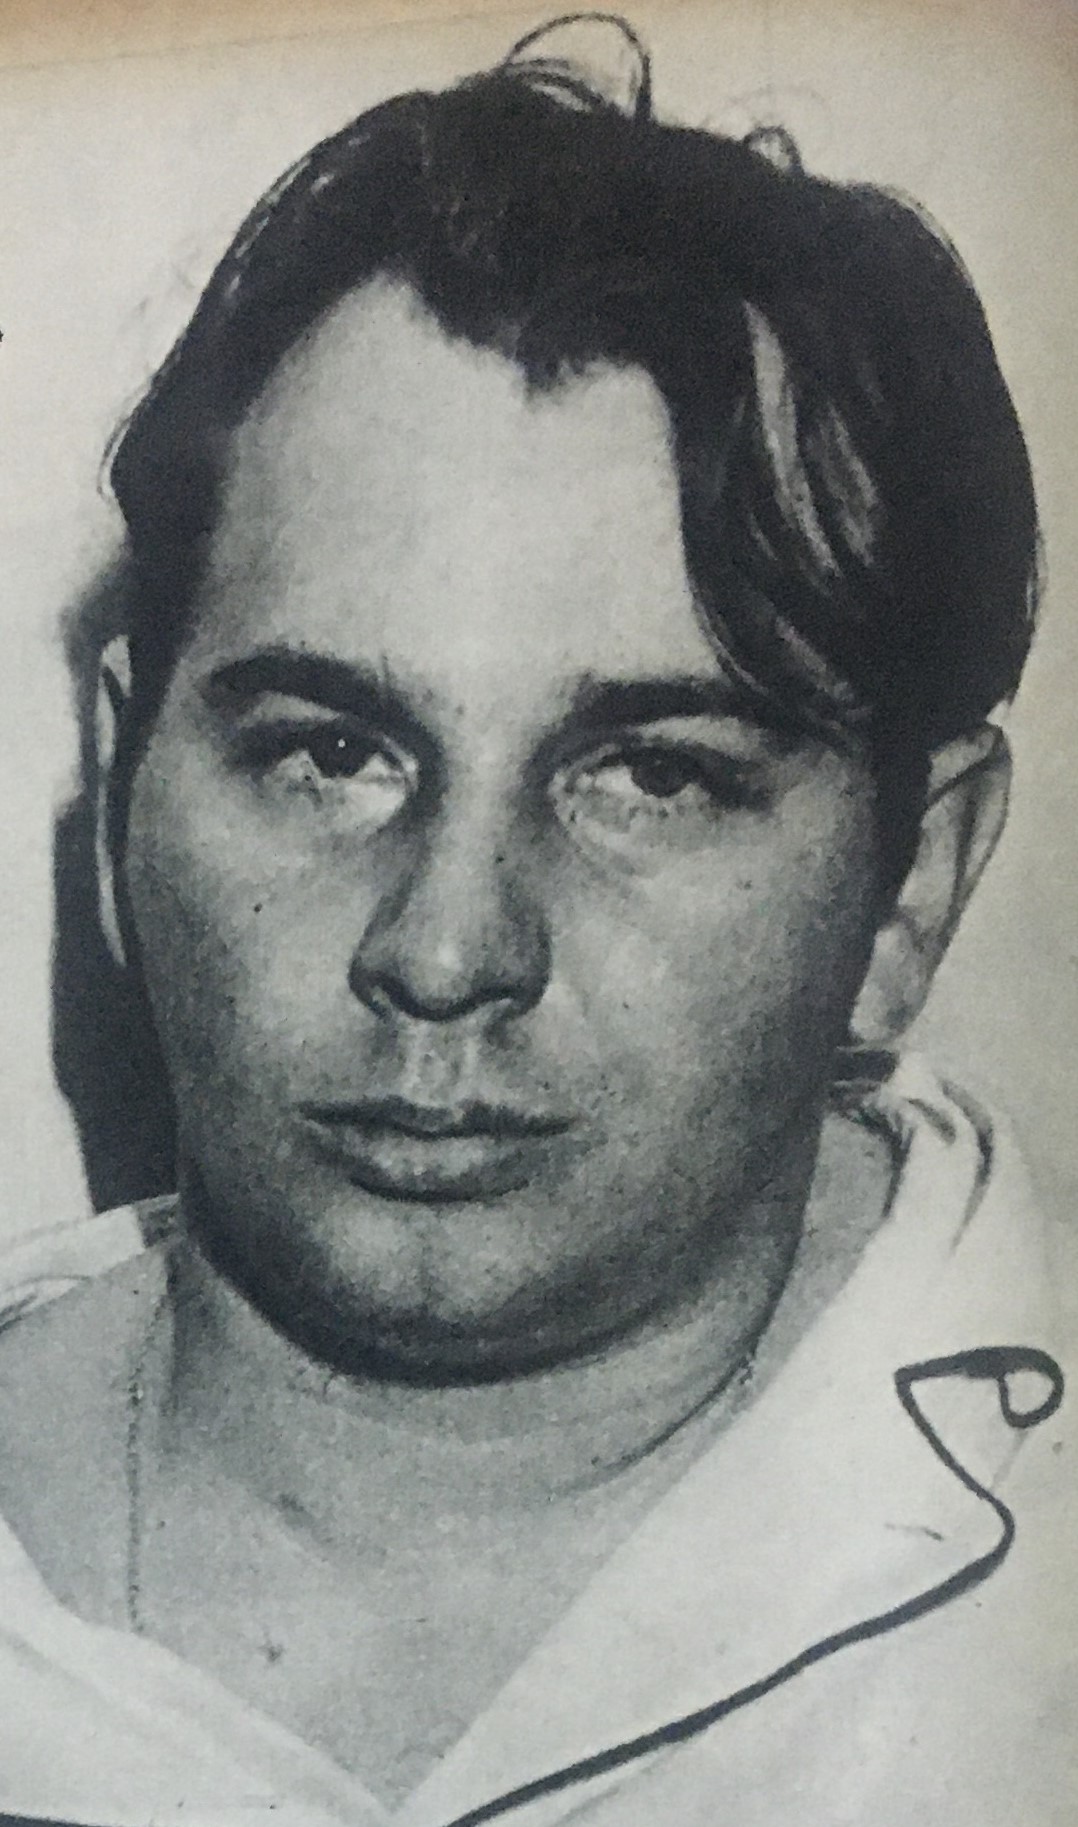 Carlos Maldonado Savelli conspiró contra el gobierno del Rómulo Betancourt. Estuvo al frente de diversos actos de terrorismo a comienzos de la década de 1960.